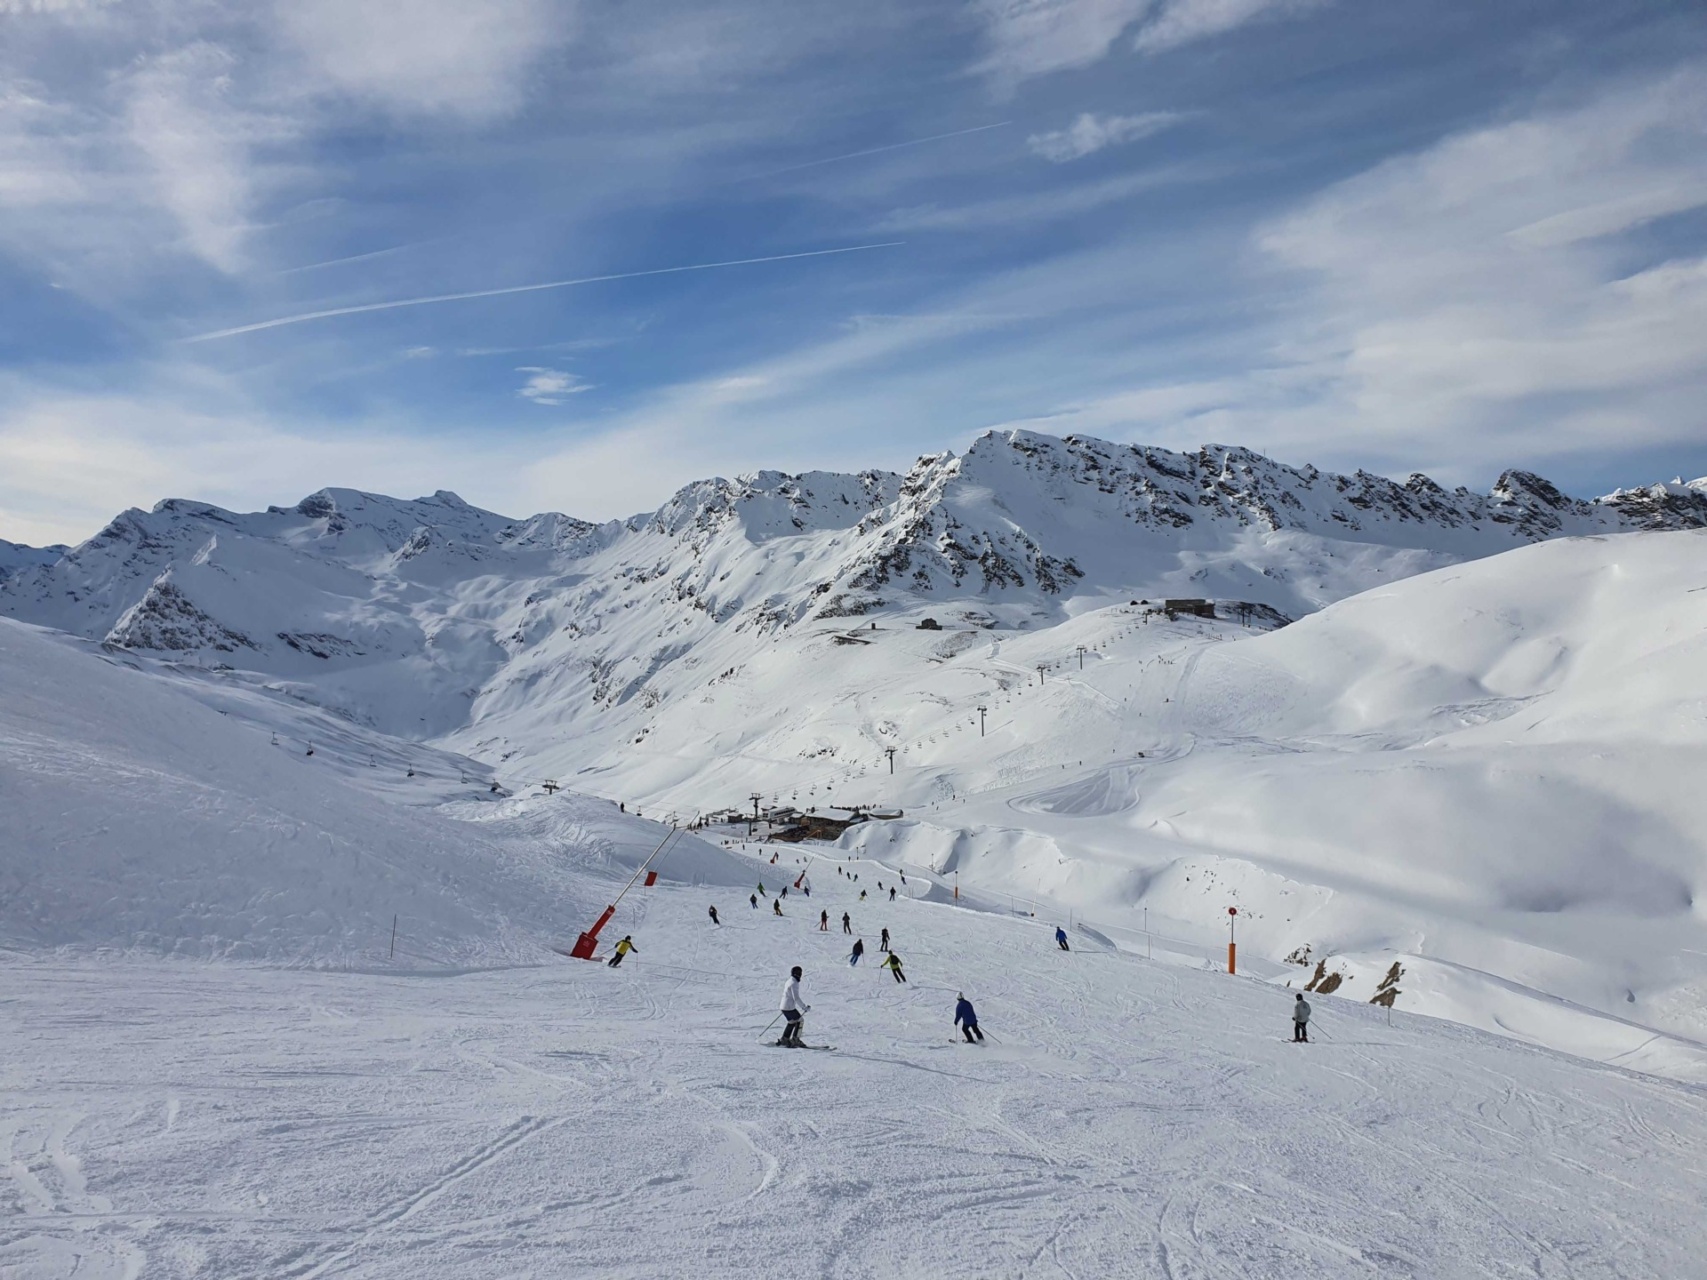 Alpenweerbericht | Eerst nog zacht, volgende week sneeuw!